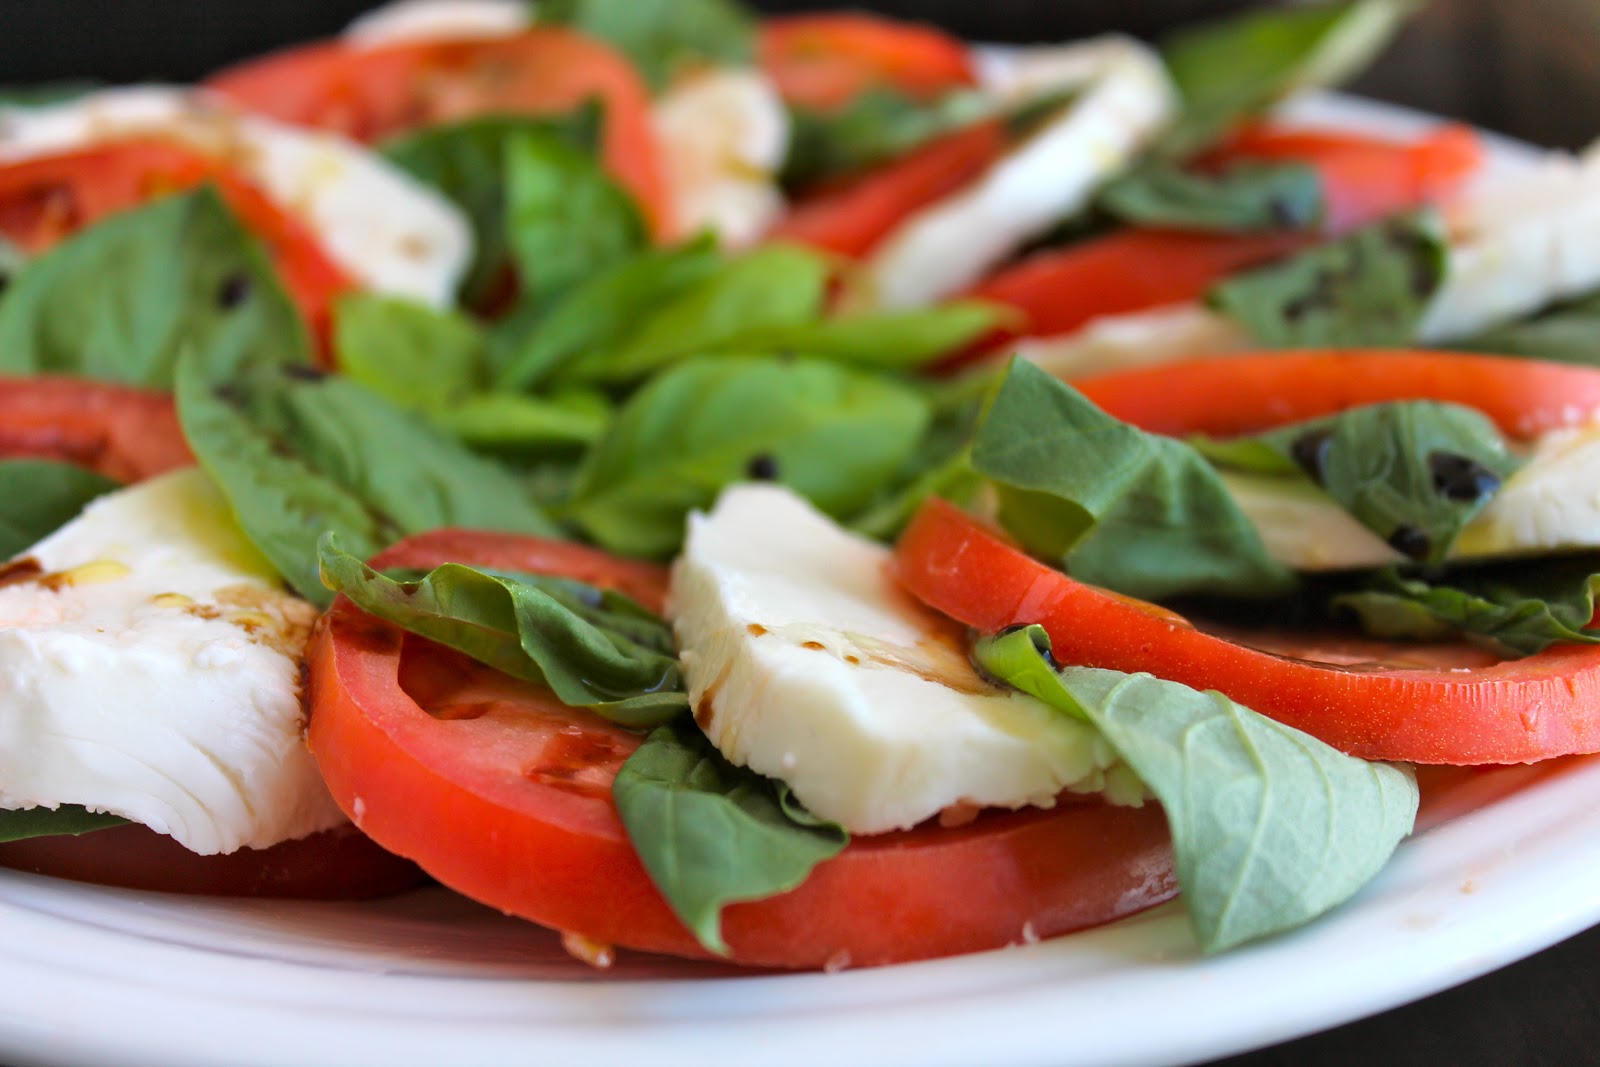 The Cultural Dish: Caprese Salad